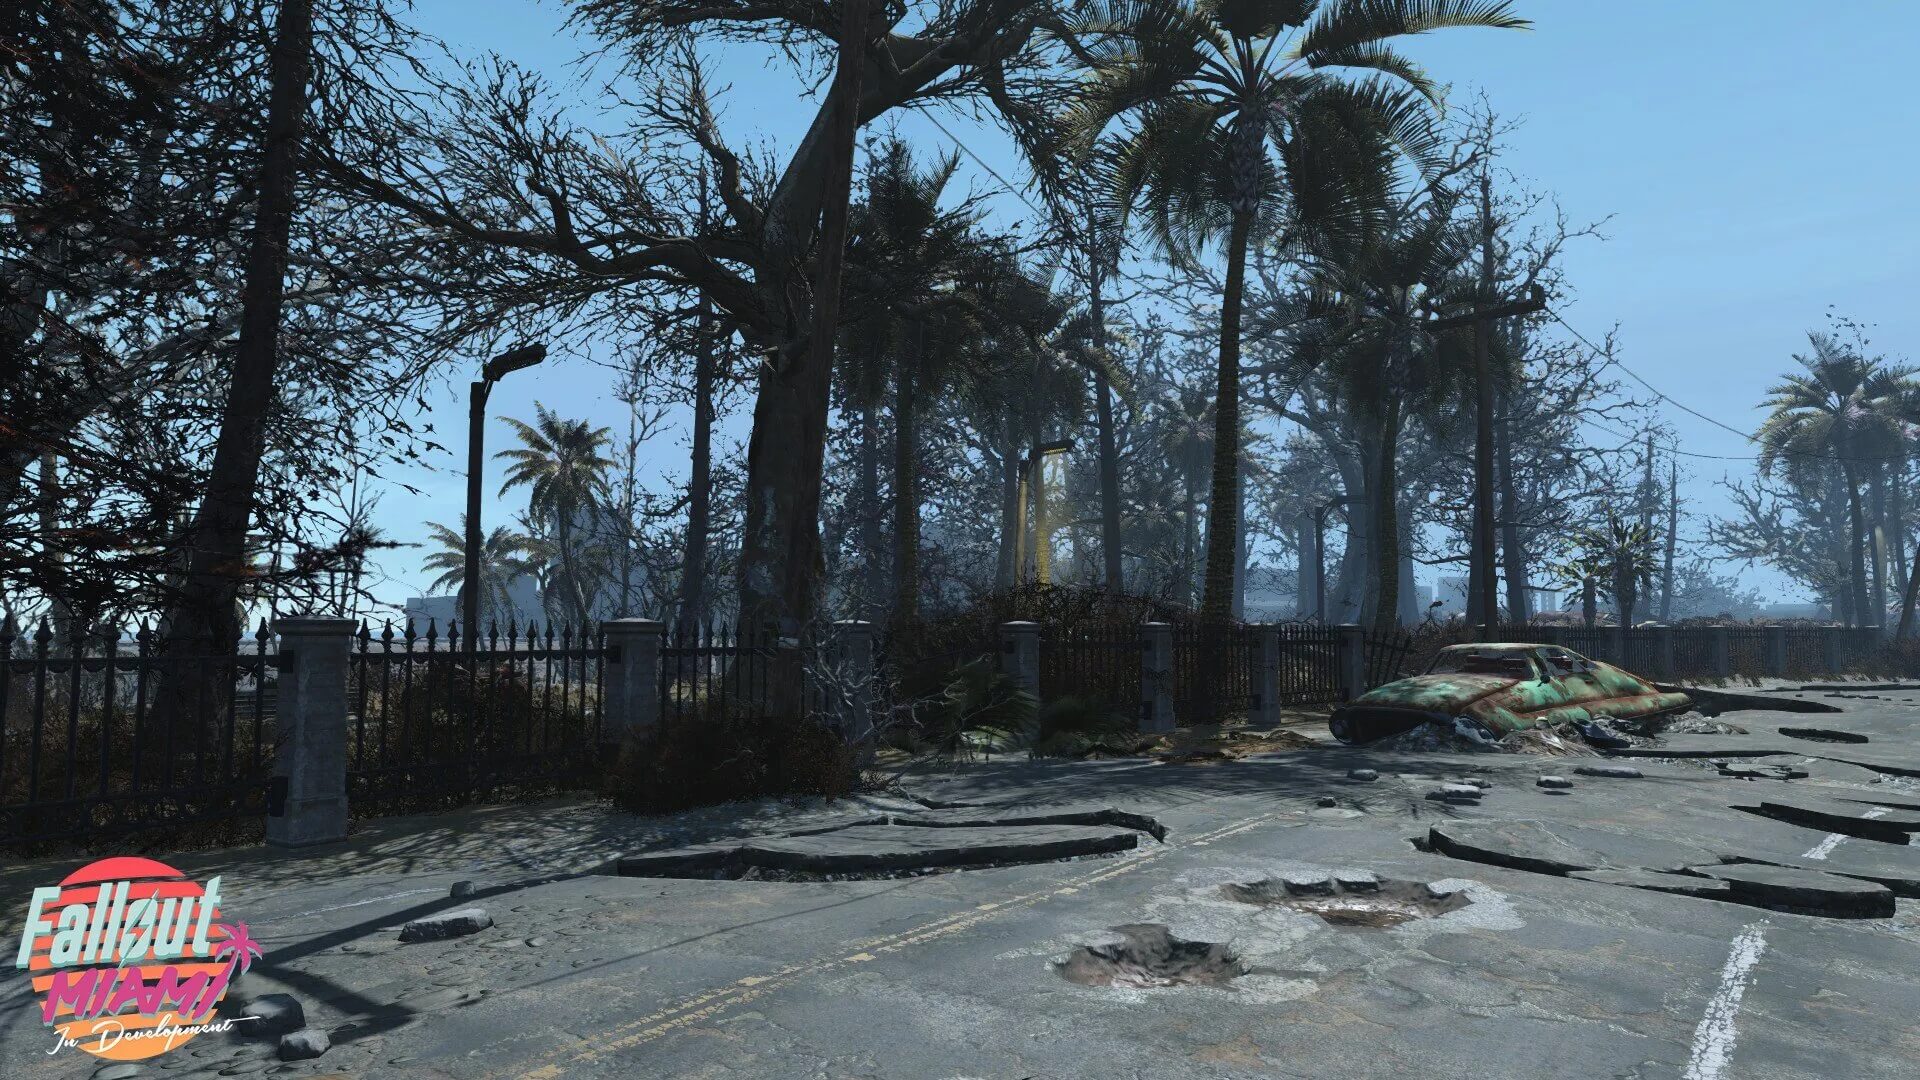 Fallout Miami, мод расширения для Fallout 4, размером с DLC, получил новый встроенный в движок трейлер